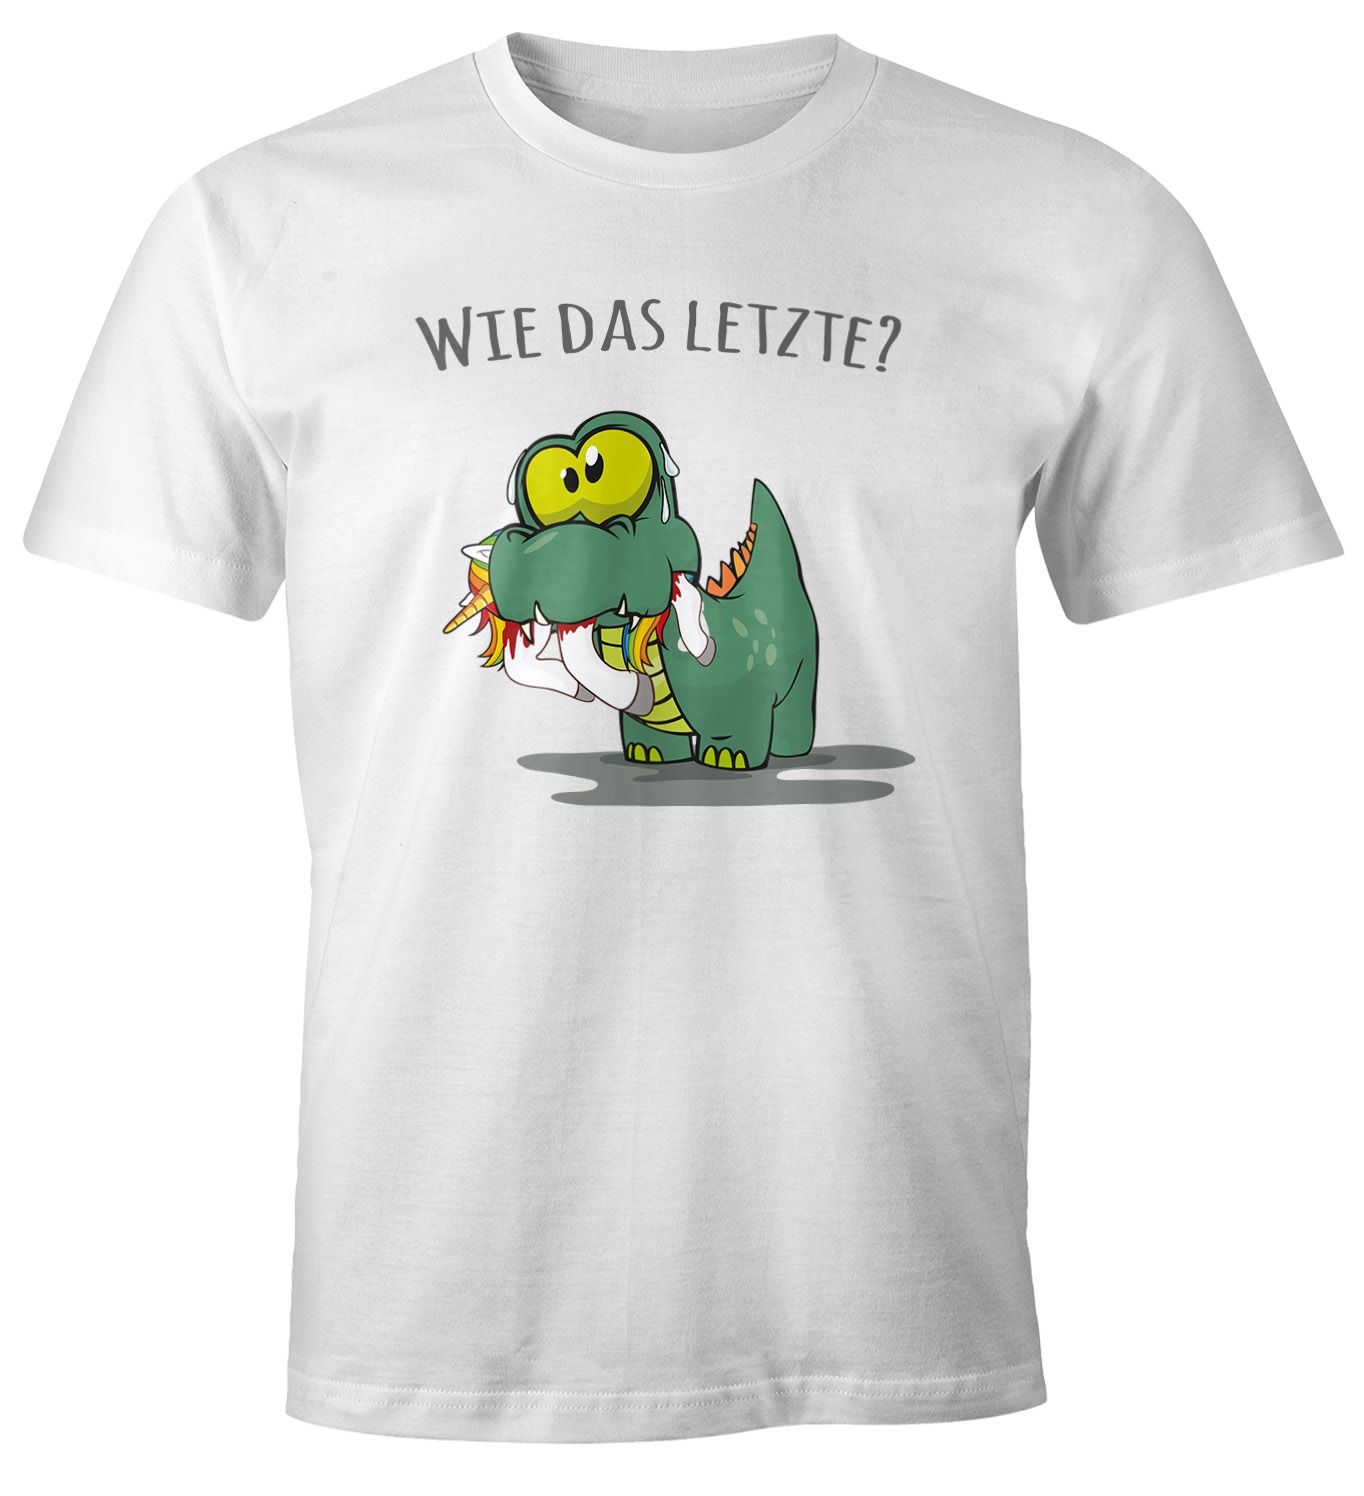 Herren T-Shirt Fun Motiv kleiner Dino frisst Einhorn Spruch "Wie das Letzte?" Fun-Shirt lustig Moonworks®